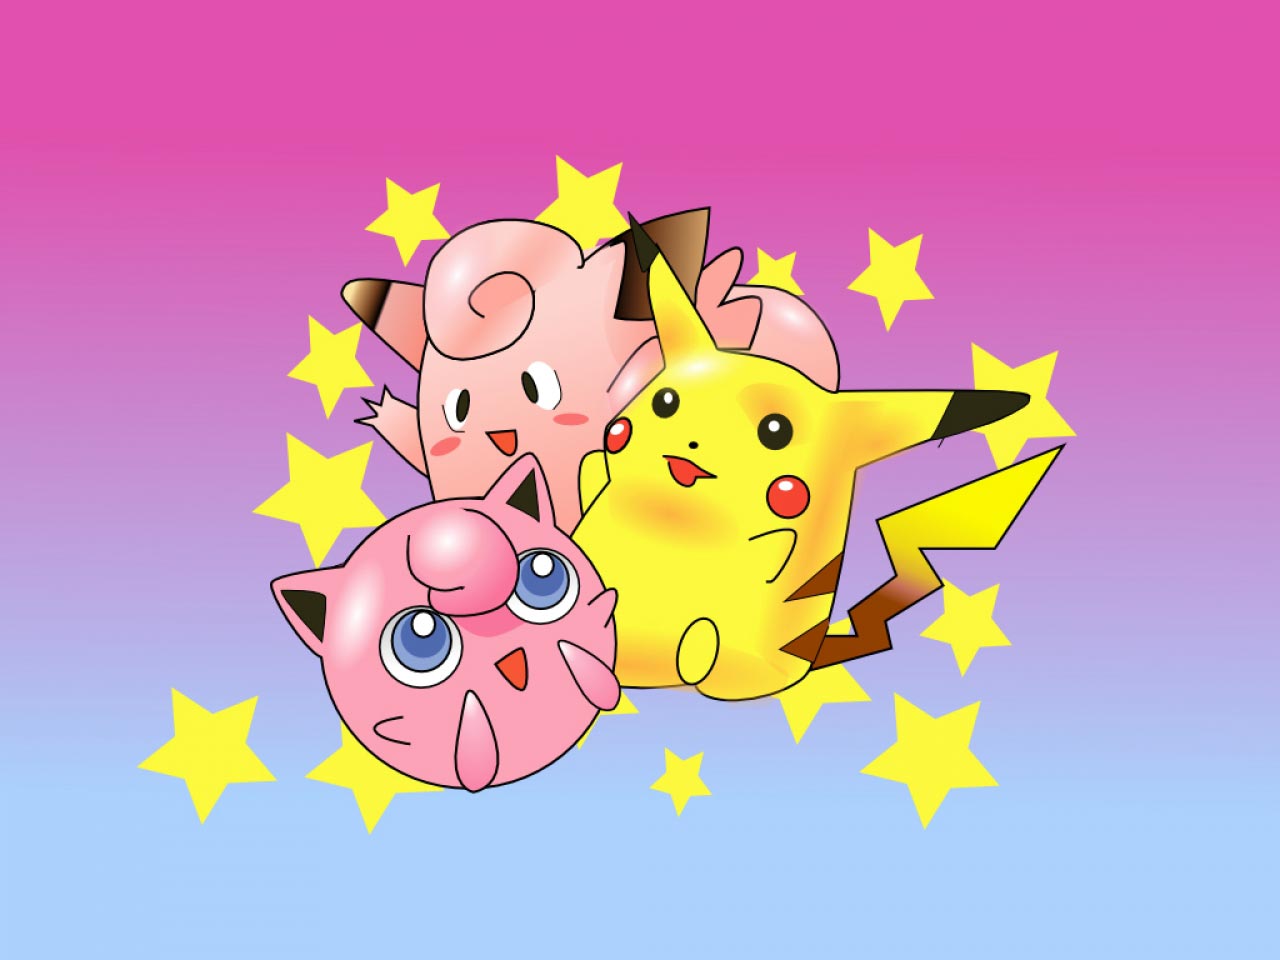 Free Pink Pokemon Wallpaper - Pokemon Images Download Free - HD Wallpaper 